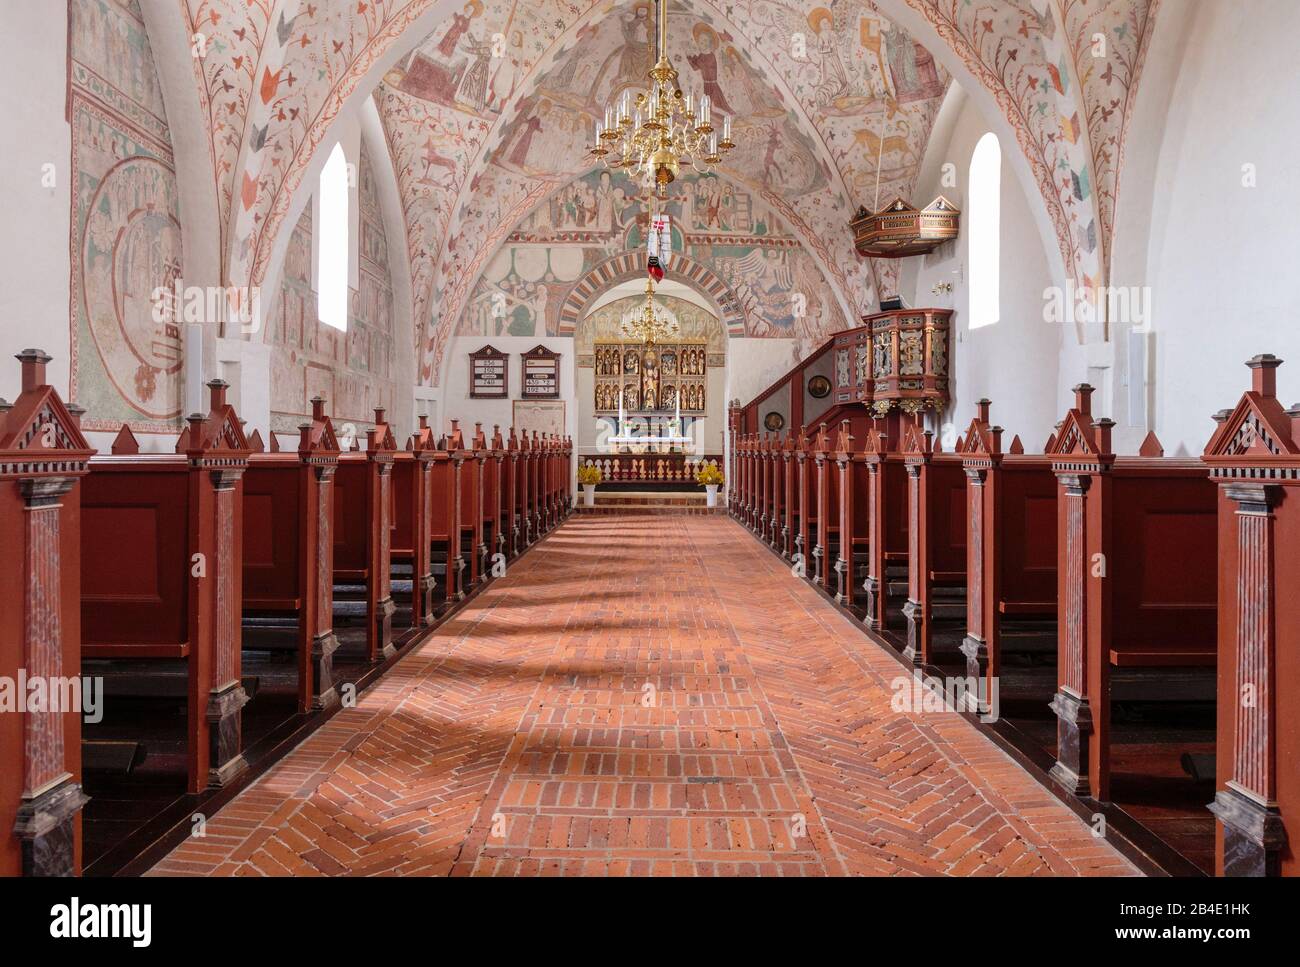 Europa, Dänemark, Møn, Keldby, Der reich mit Fresken (entstanden zwischen 1275–1600) verzierte Innenraum der Keldby-Kirche (13, Jh,) Foto Stock